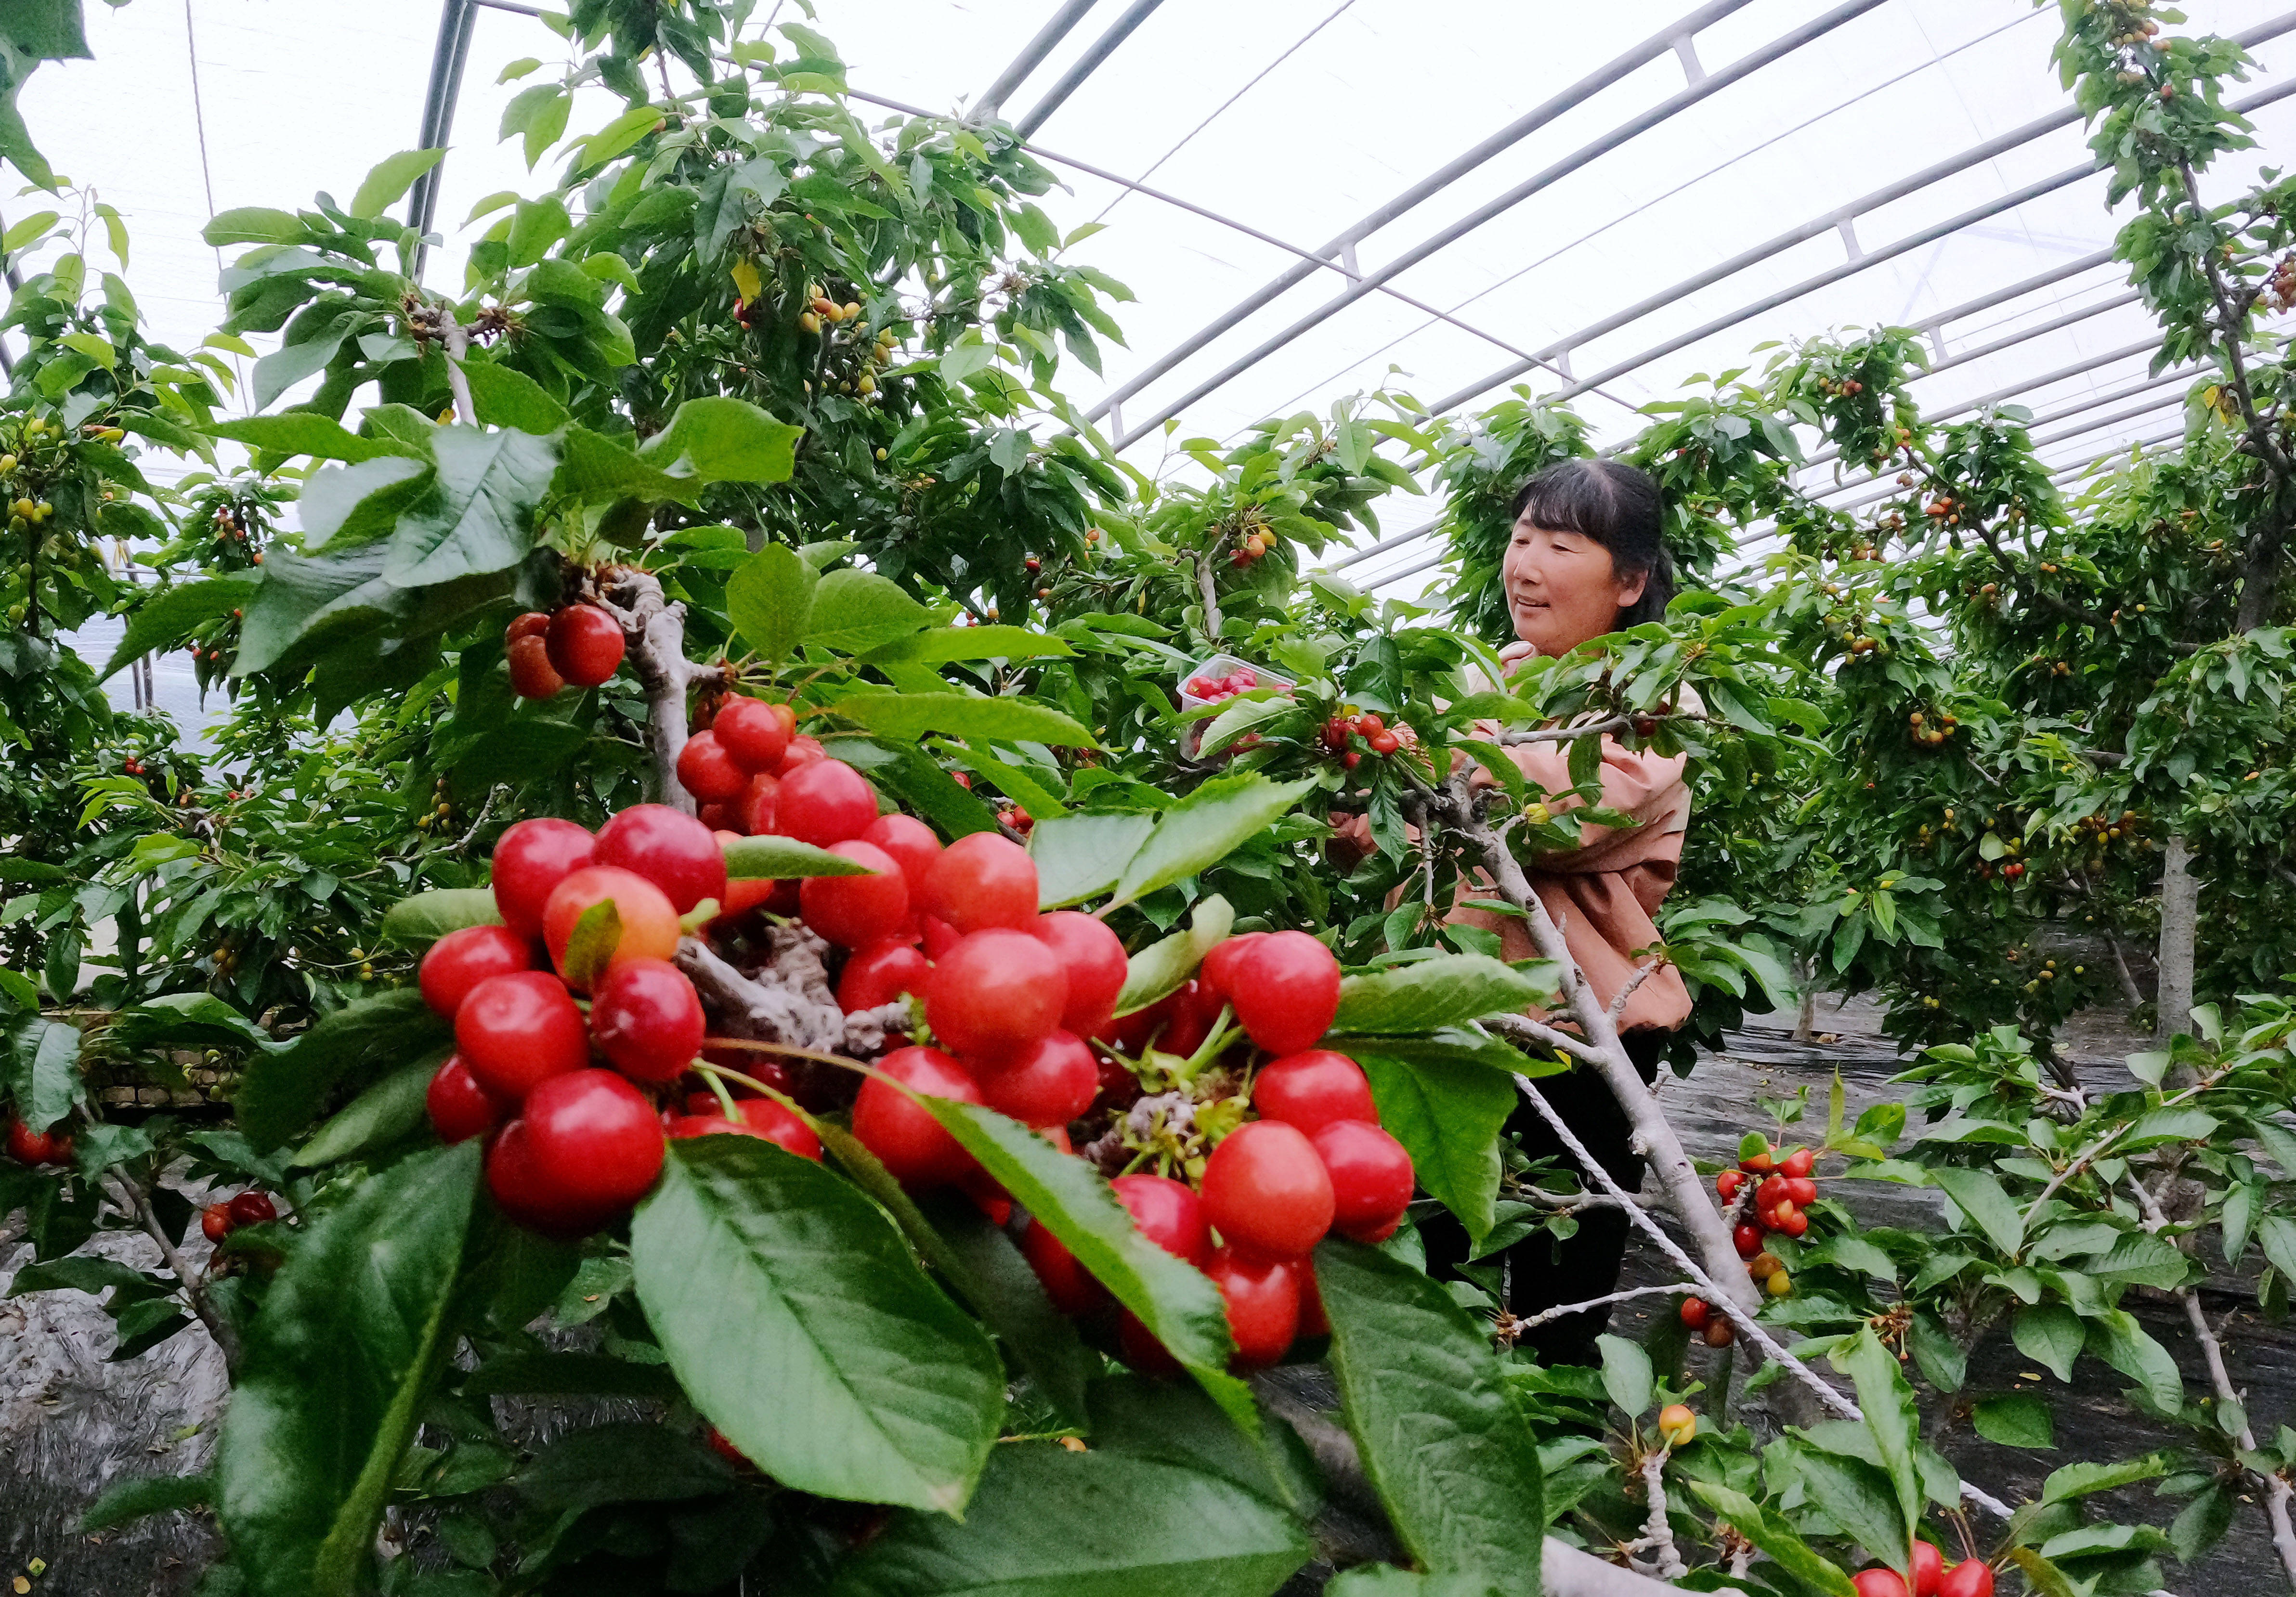 4月6日,顺平县蒲上镇伍郎村育顺农业基地的工人在大棚内采摘樱桃.